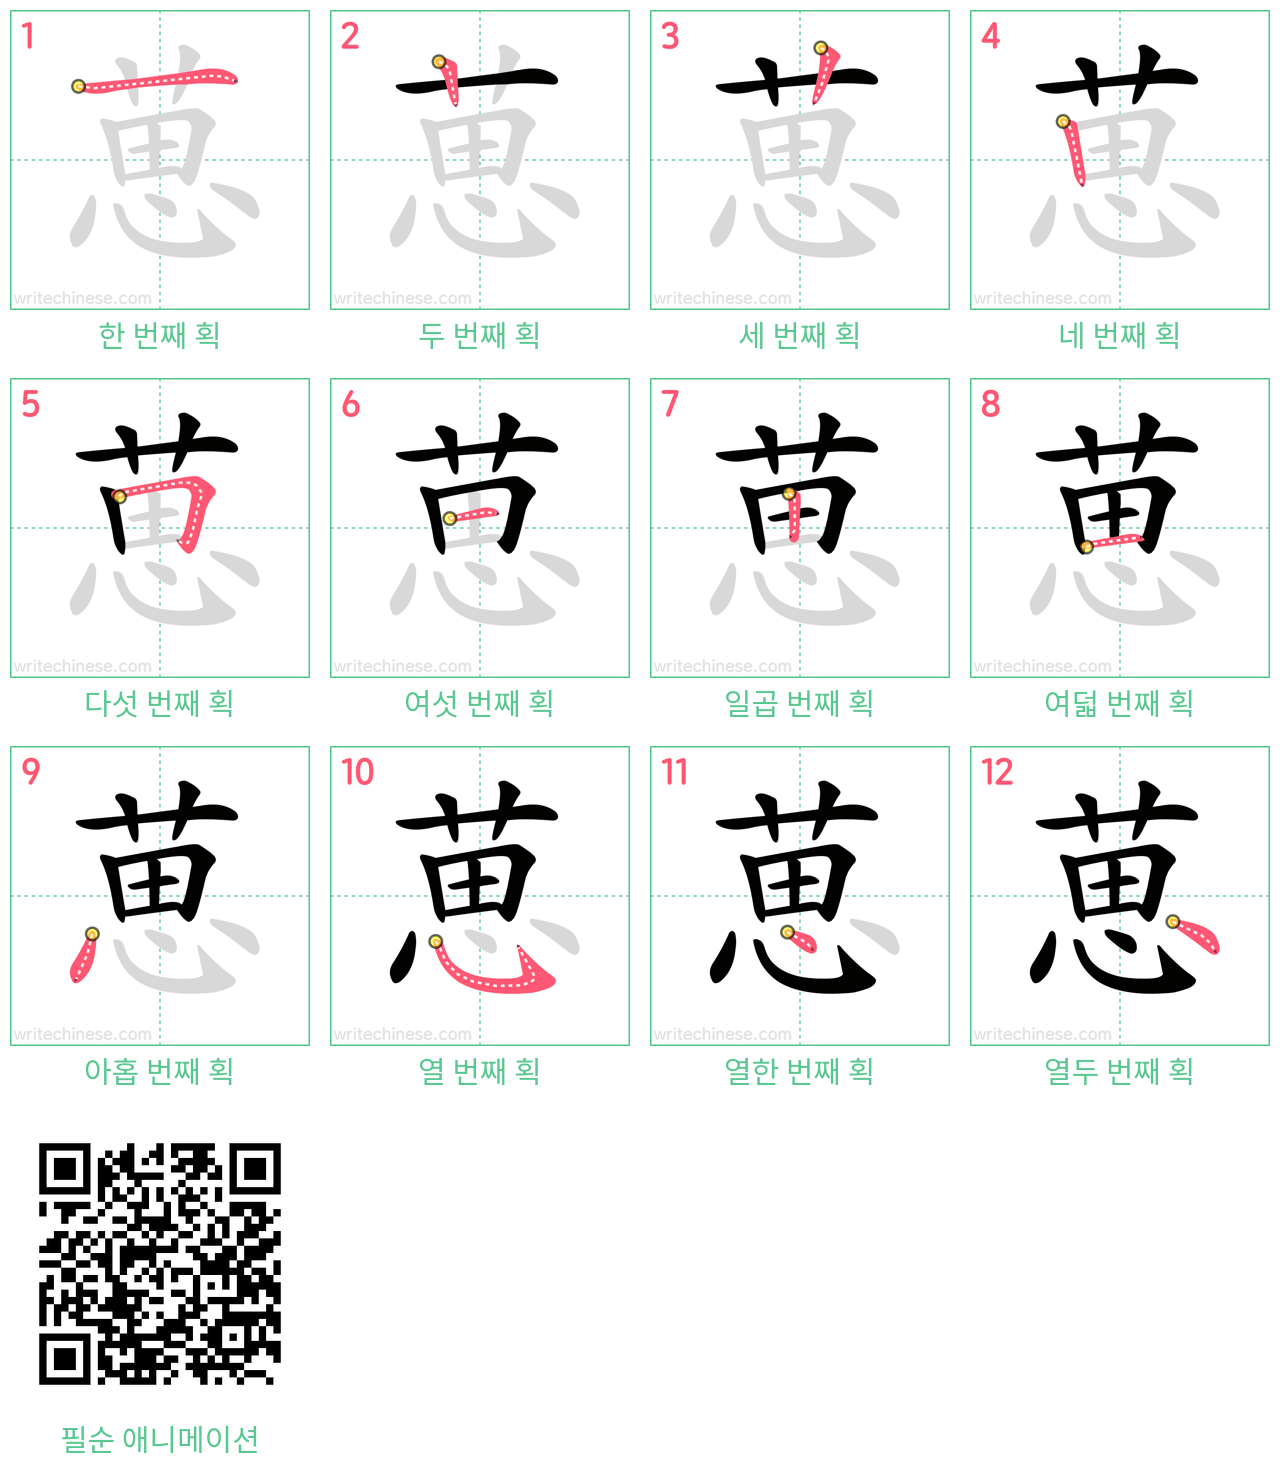 葸 step-by-step stroke order diagrams